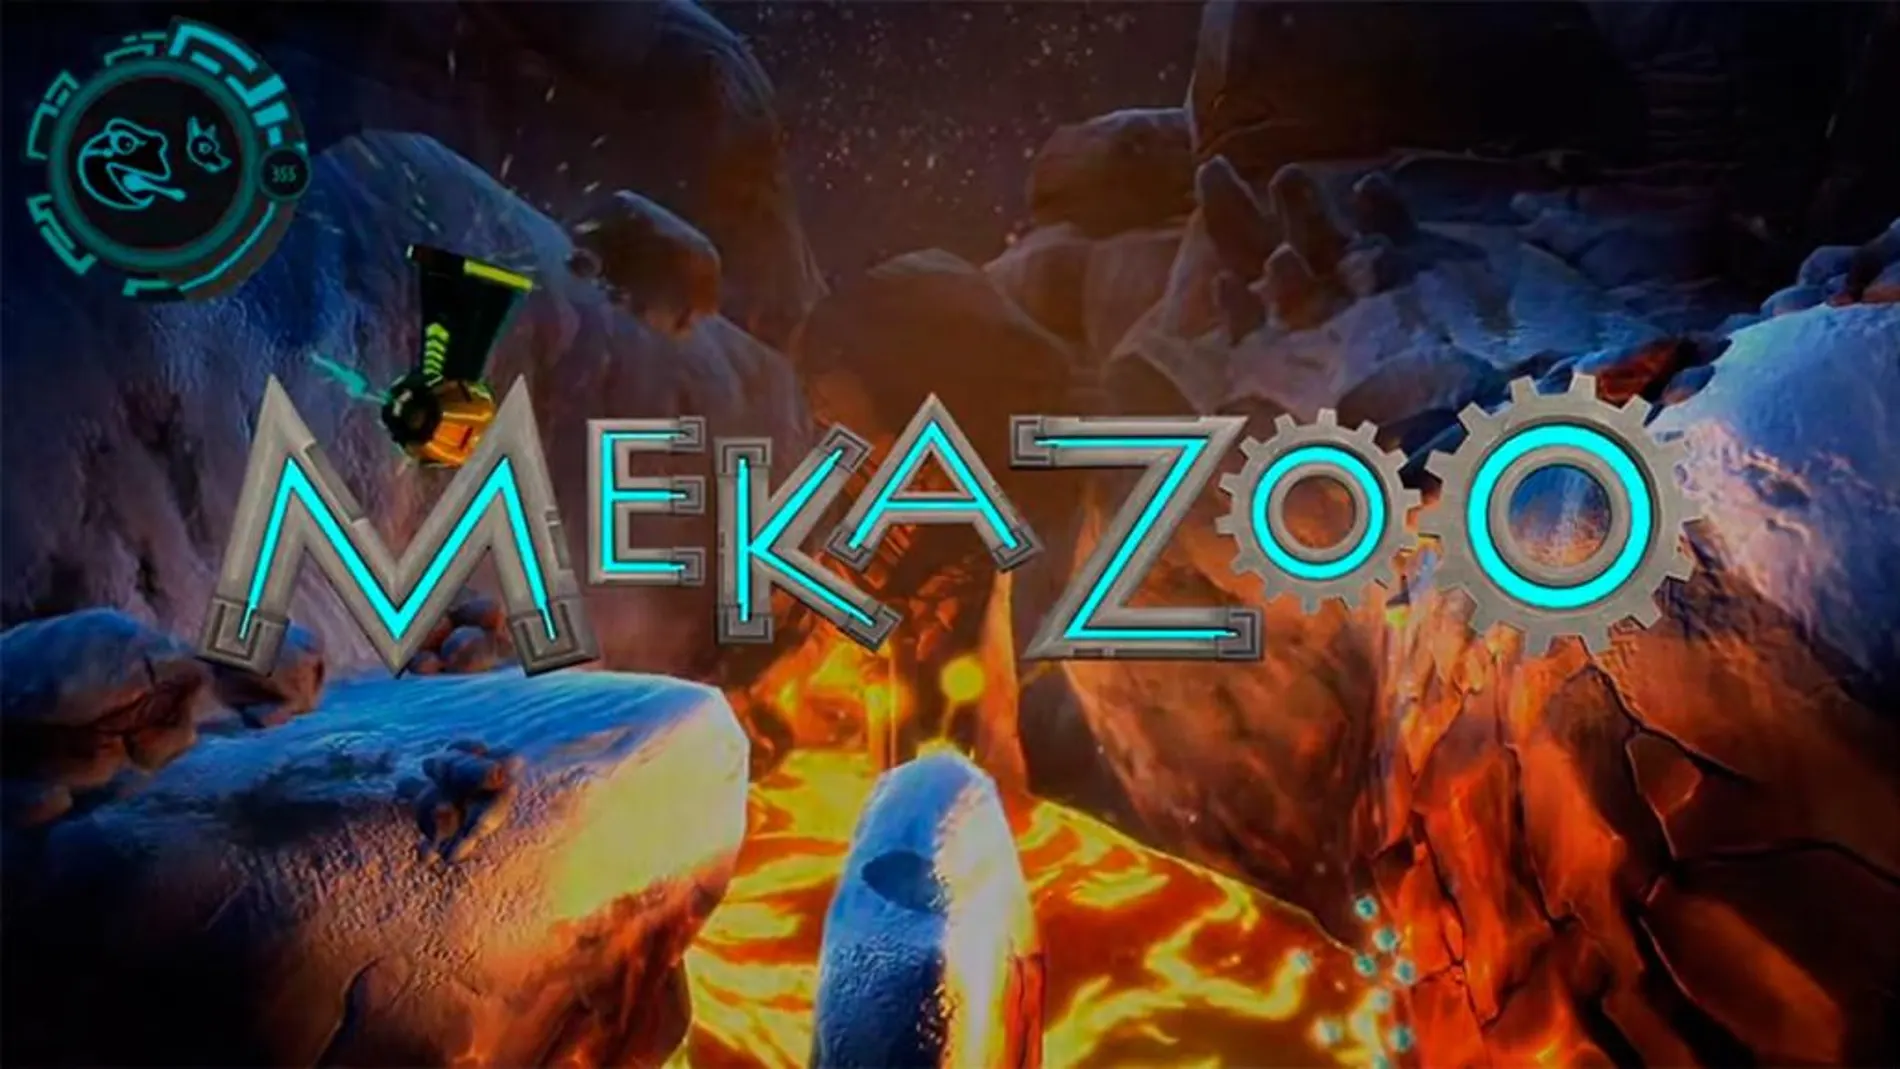 Desvelado «Mekazoo», un plataformas inspirado en «Super Mario» y «Donkey Kong»